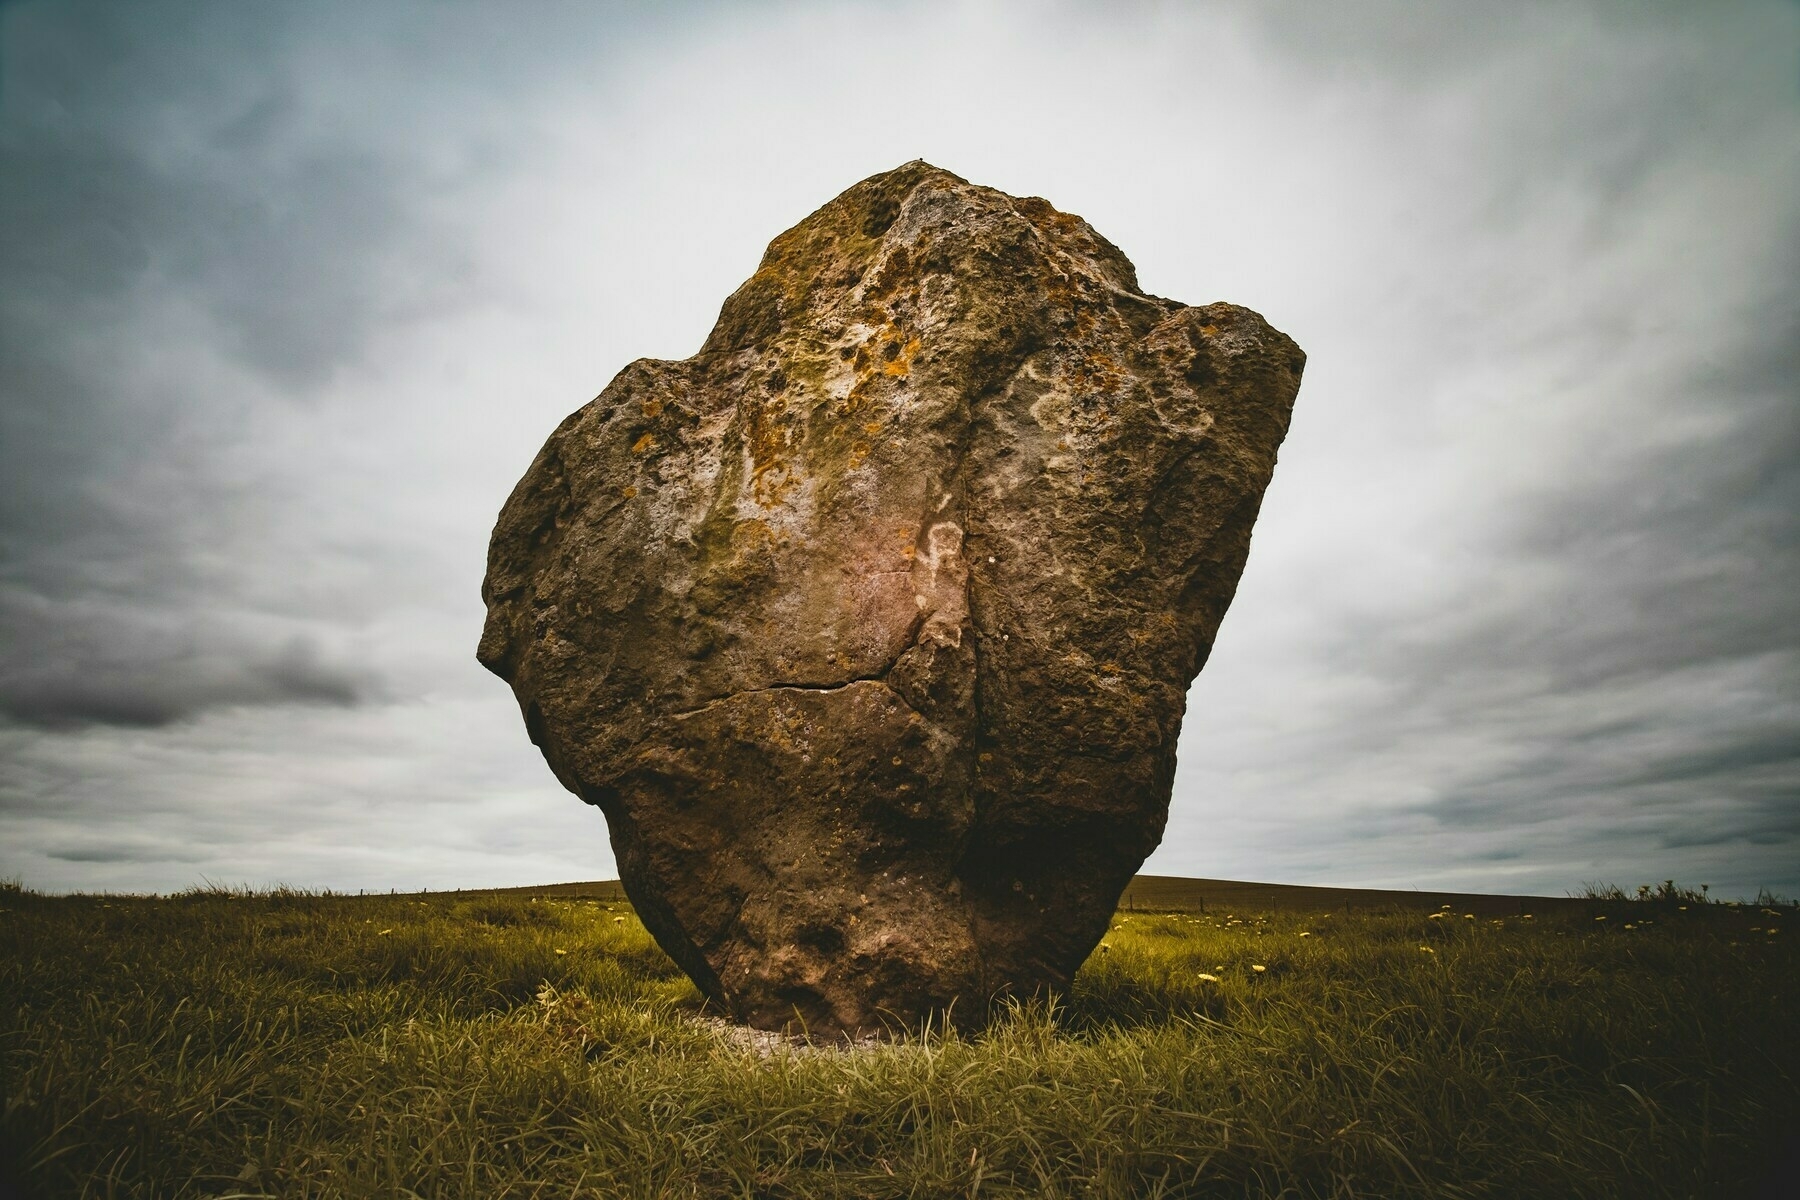 a huge boulder in a field